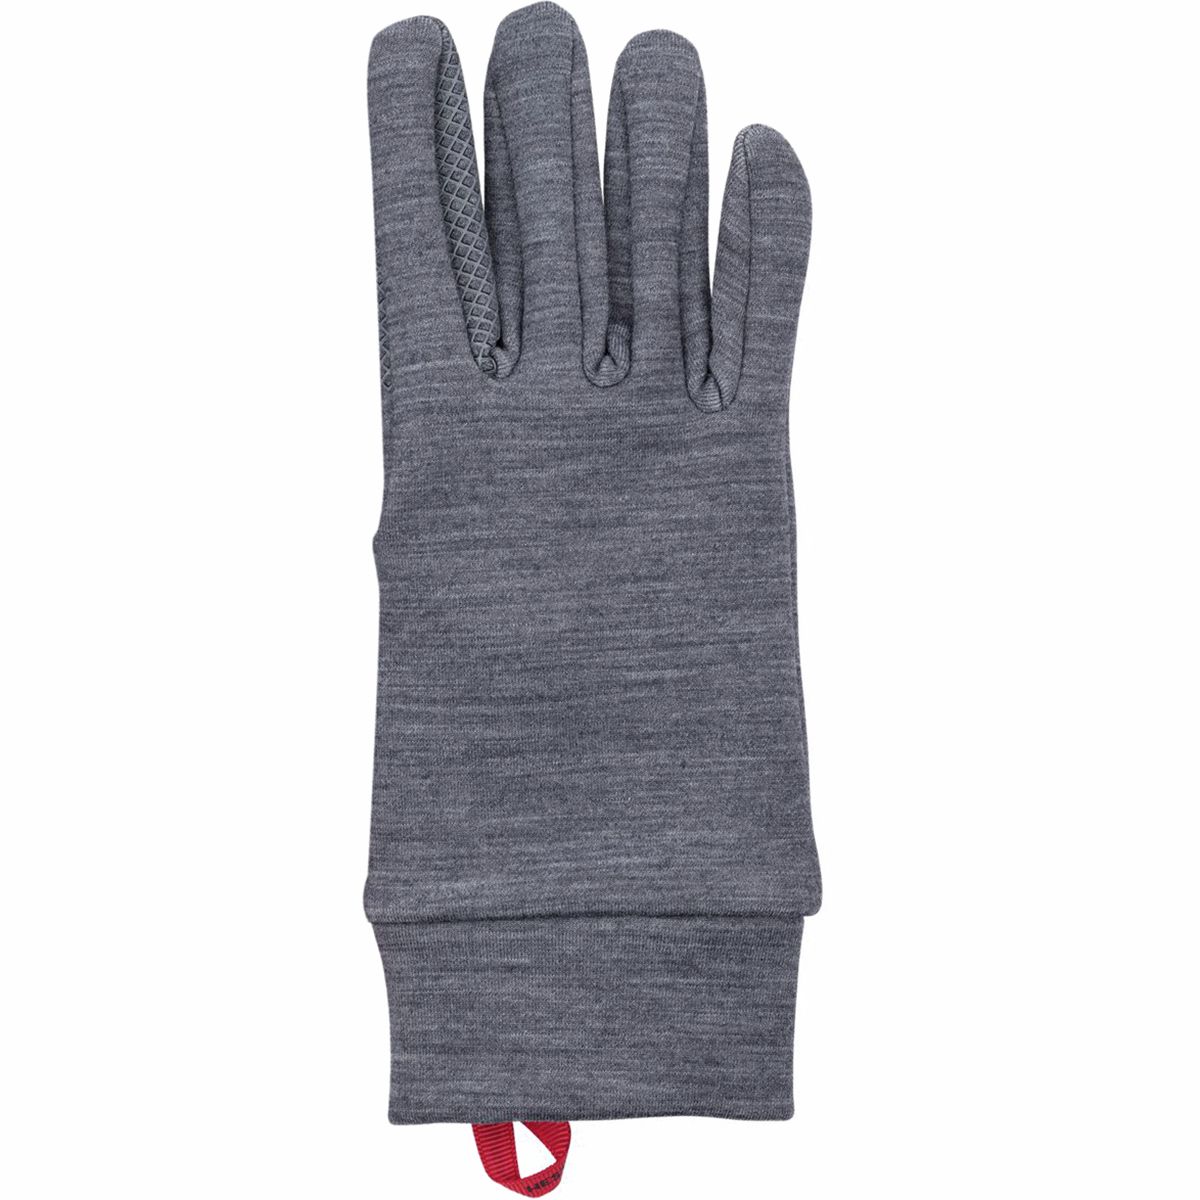 Hestra Touch Warmth Glove Liner Grey